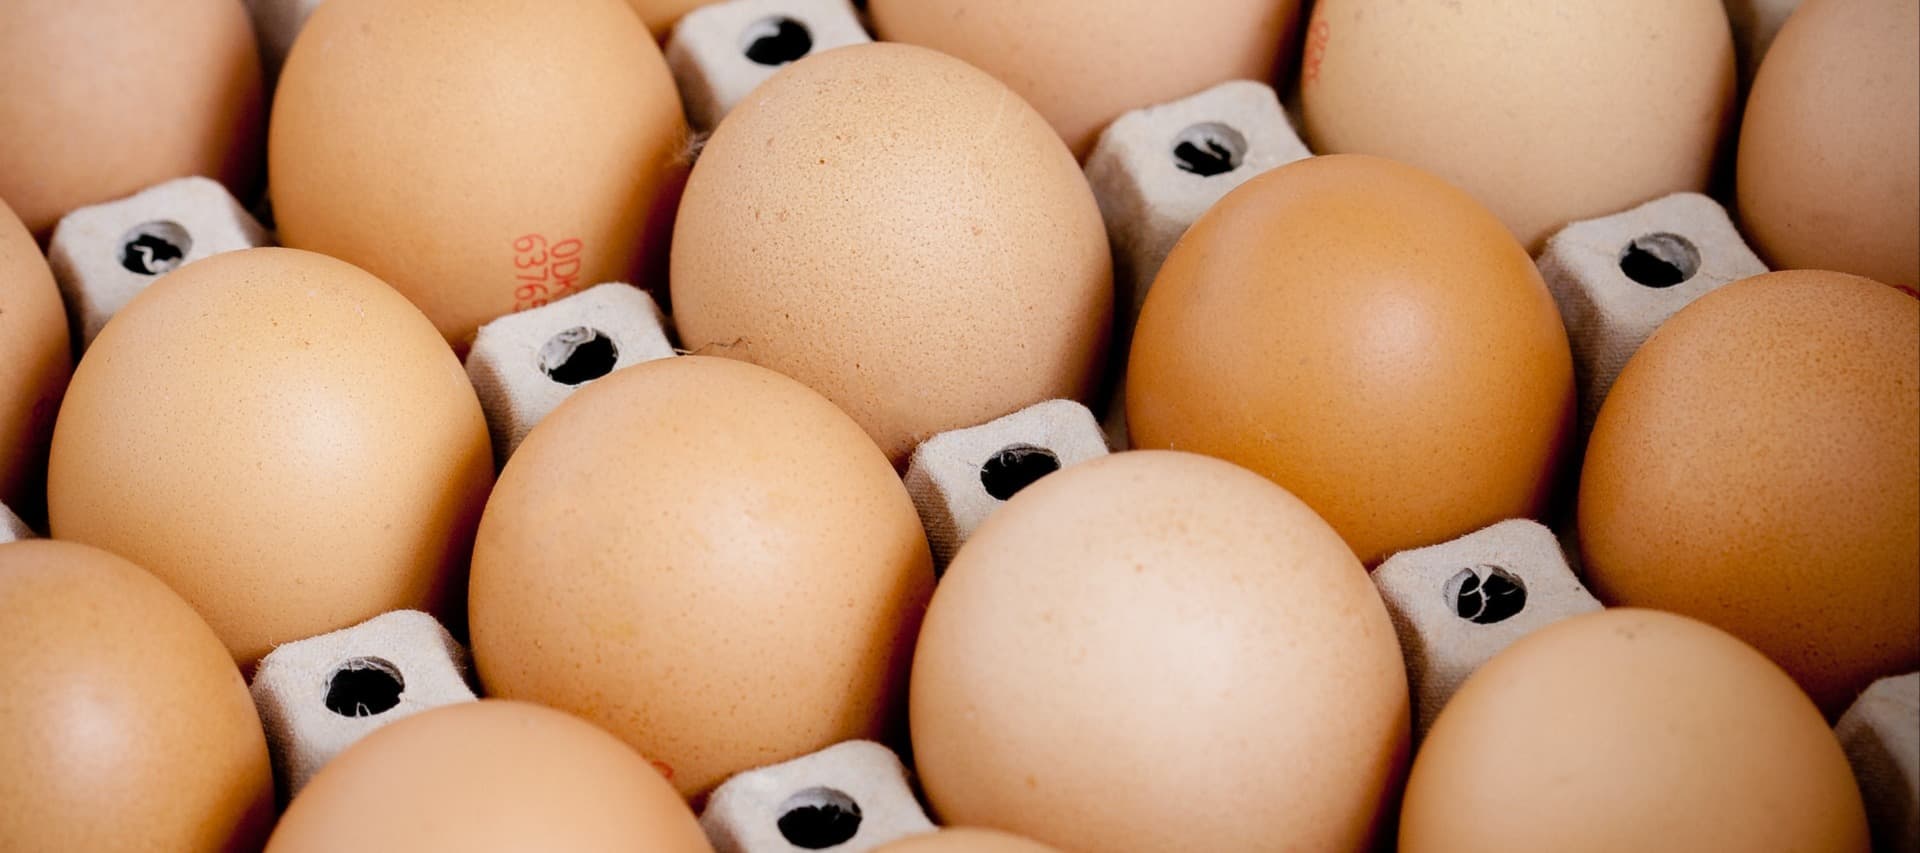 Фото новости: "Власти регионов начали договариваться с птицефабриками о ценах на яйца"